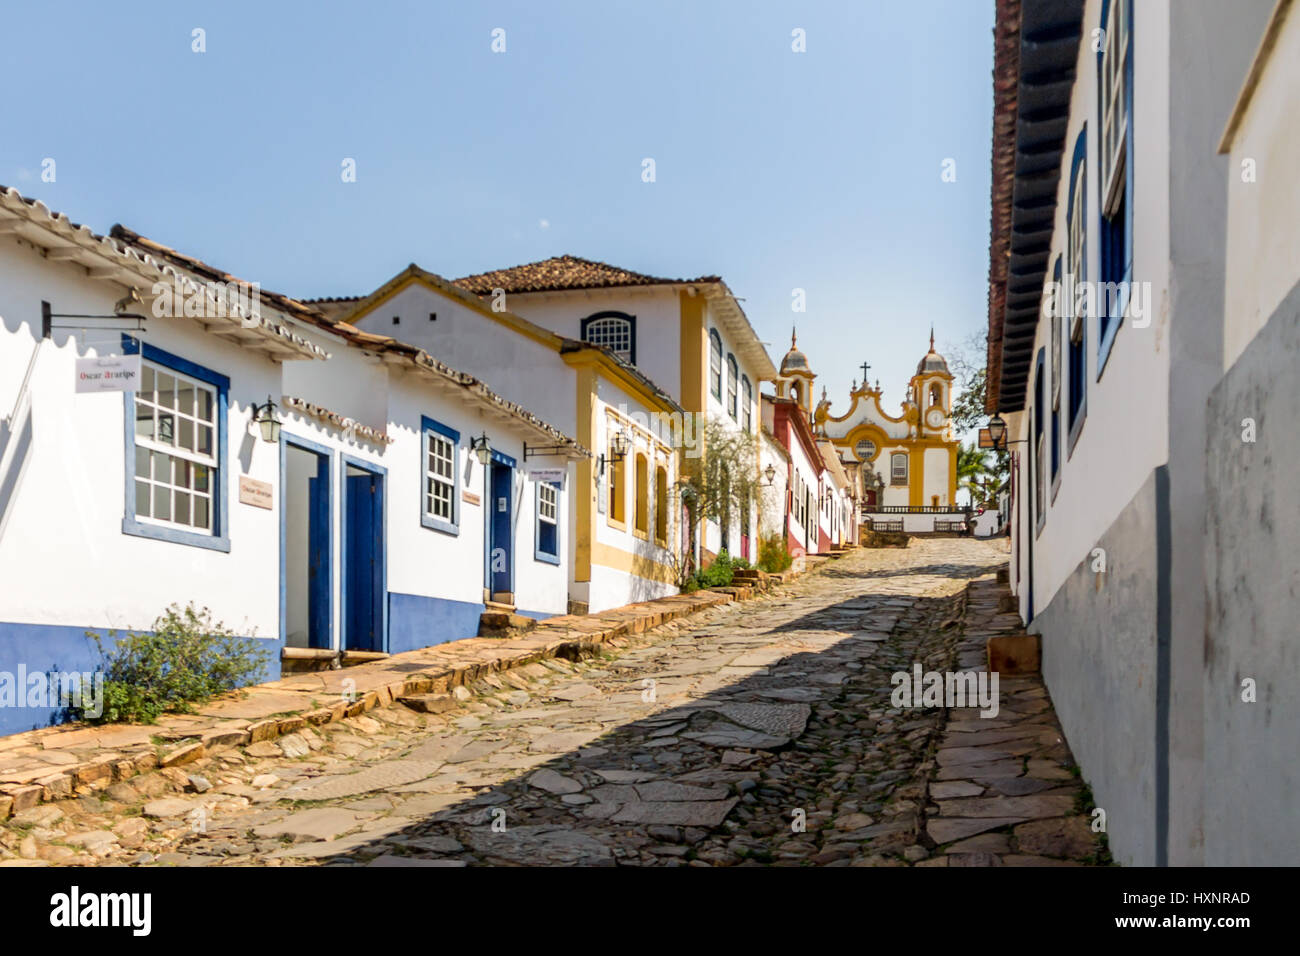 Bunten Häusern im Kolonialstil und Kirche in Stadt Tiradentes - Minas Gerais, Brasilien Stockfoto